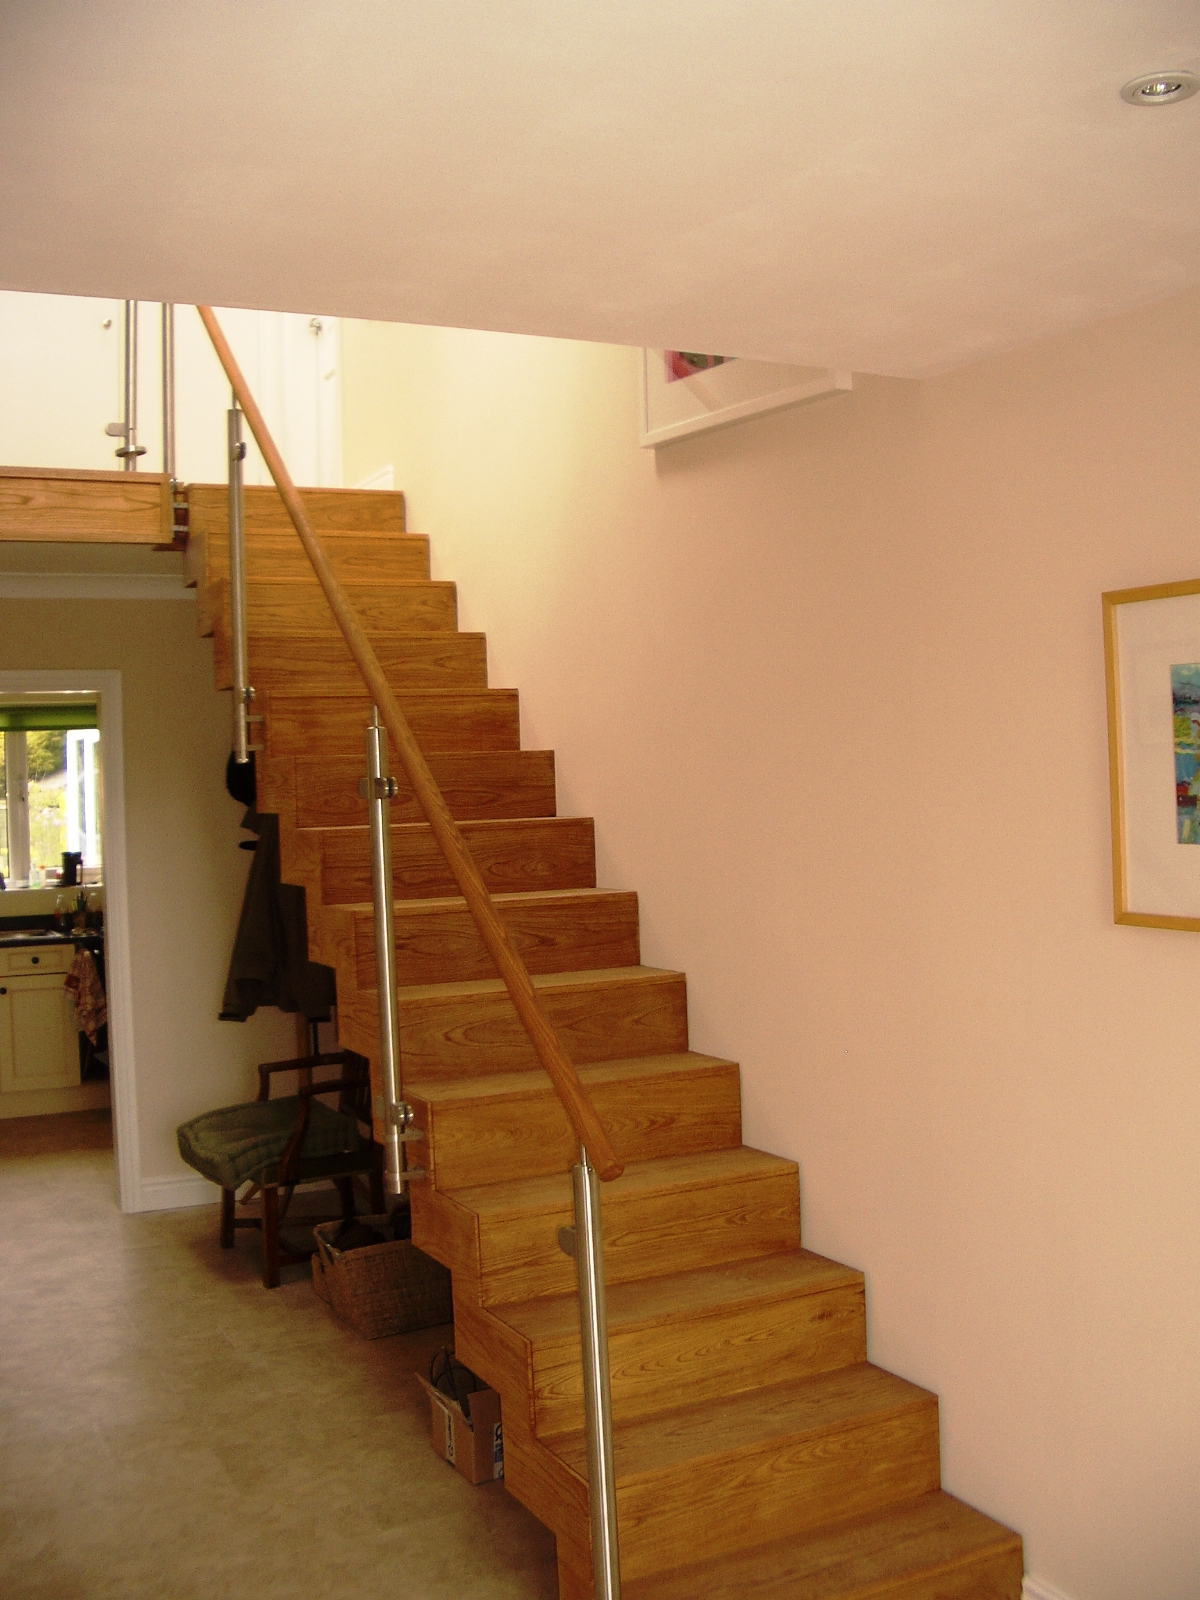 rosemary stairs 003